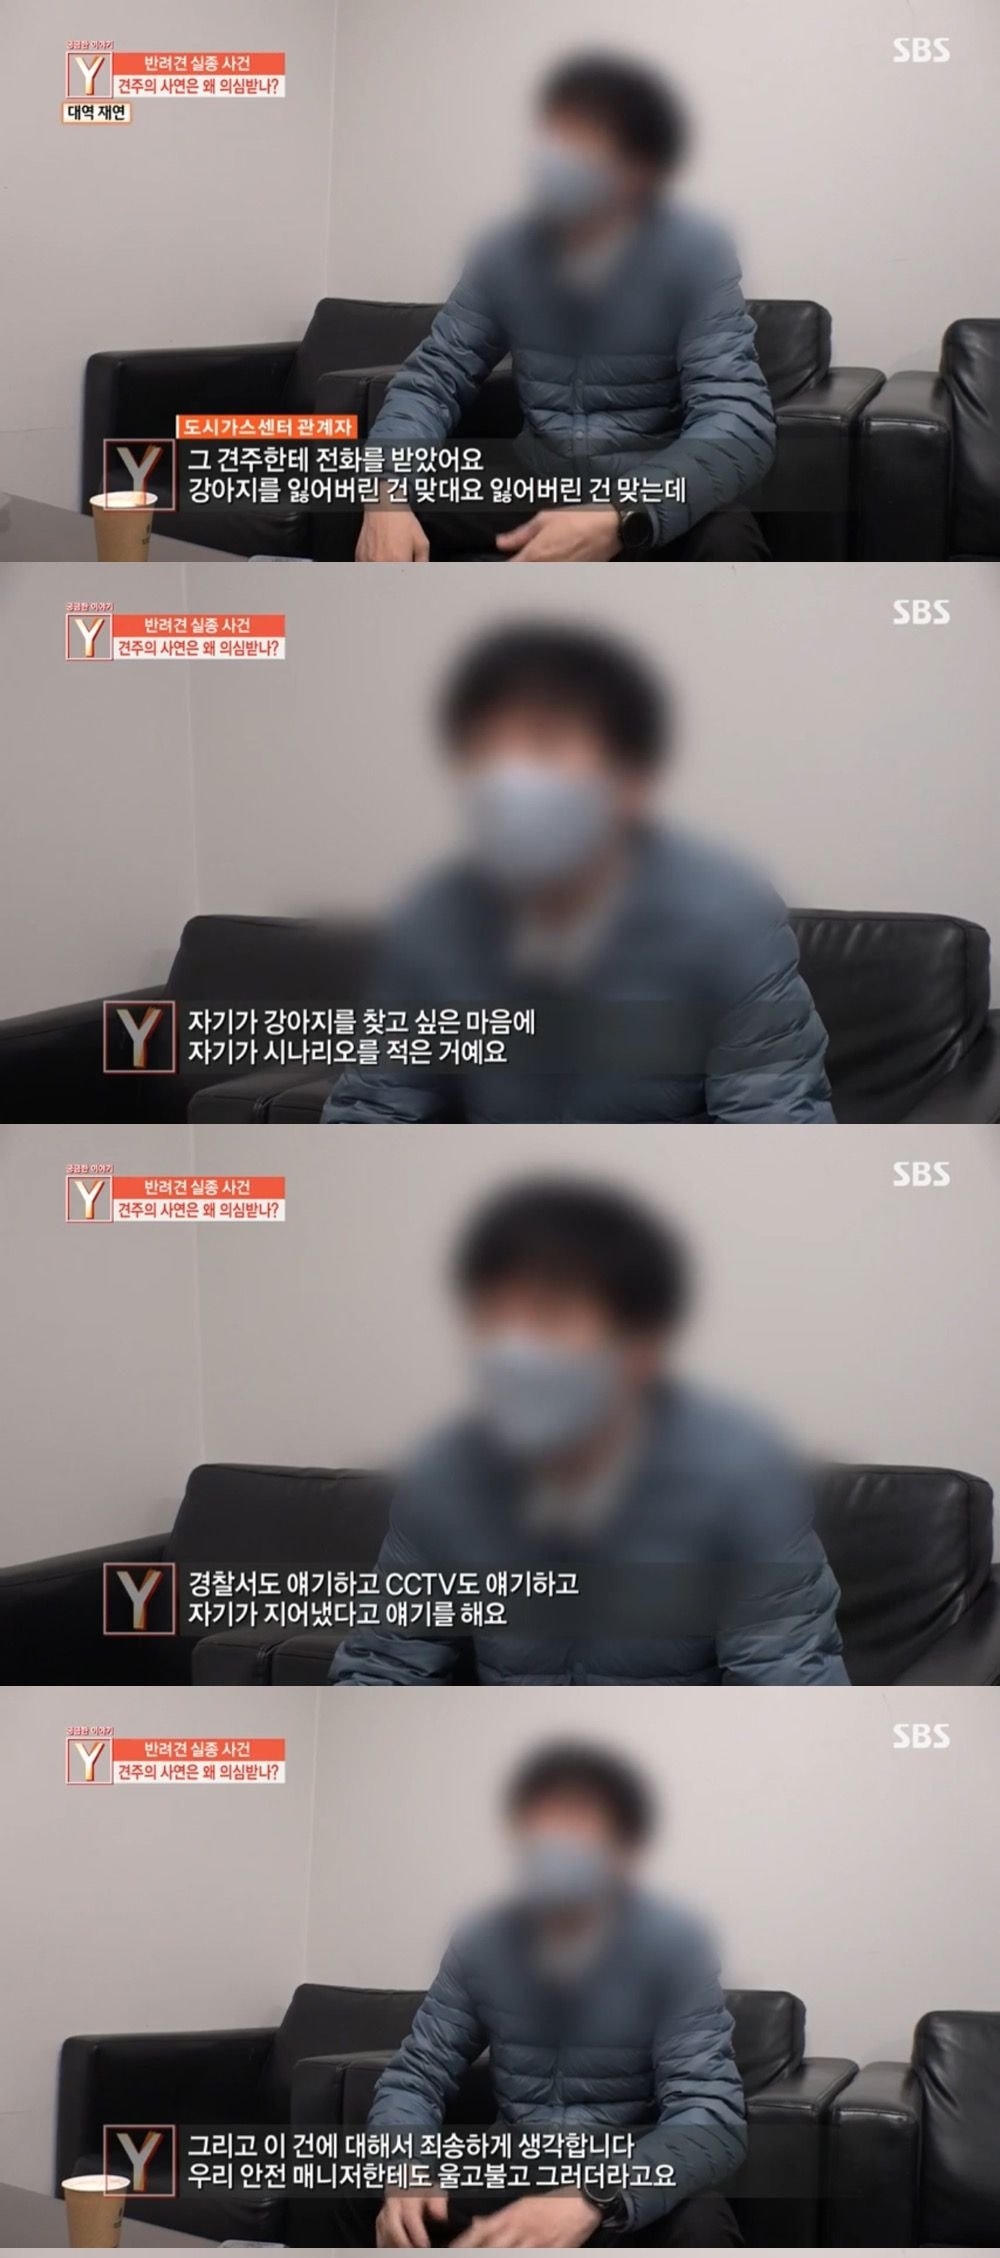 “검침원이 들어와 반려견 실종” 네티즌 사연은 거짓